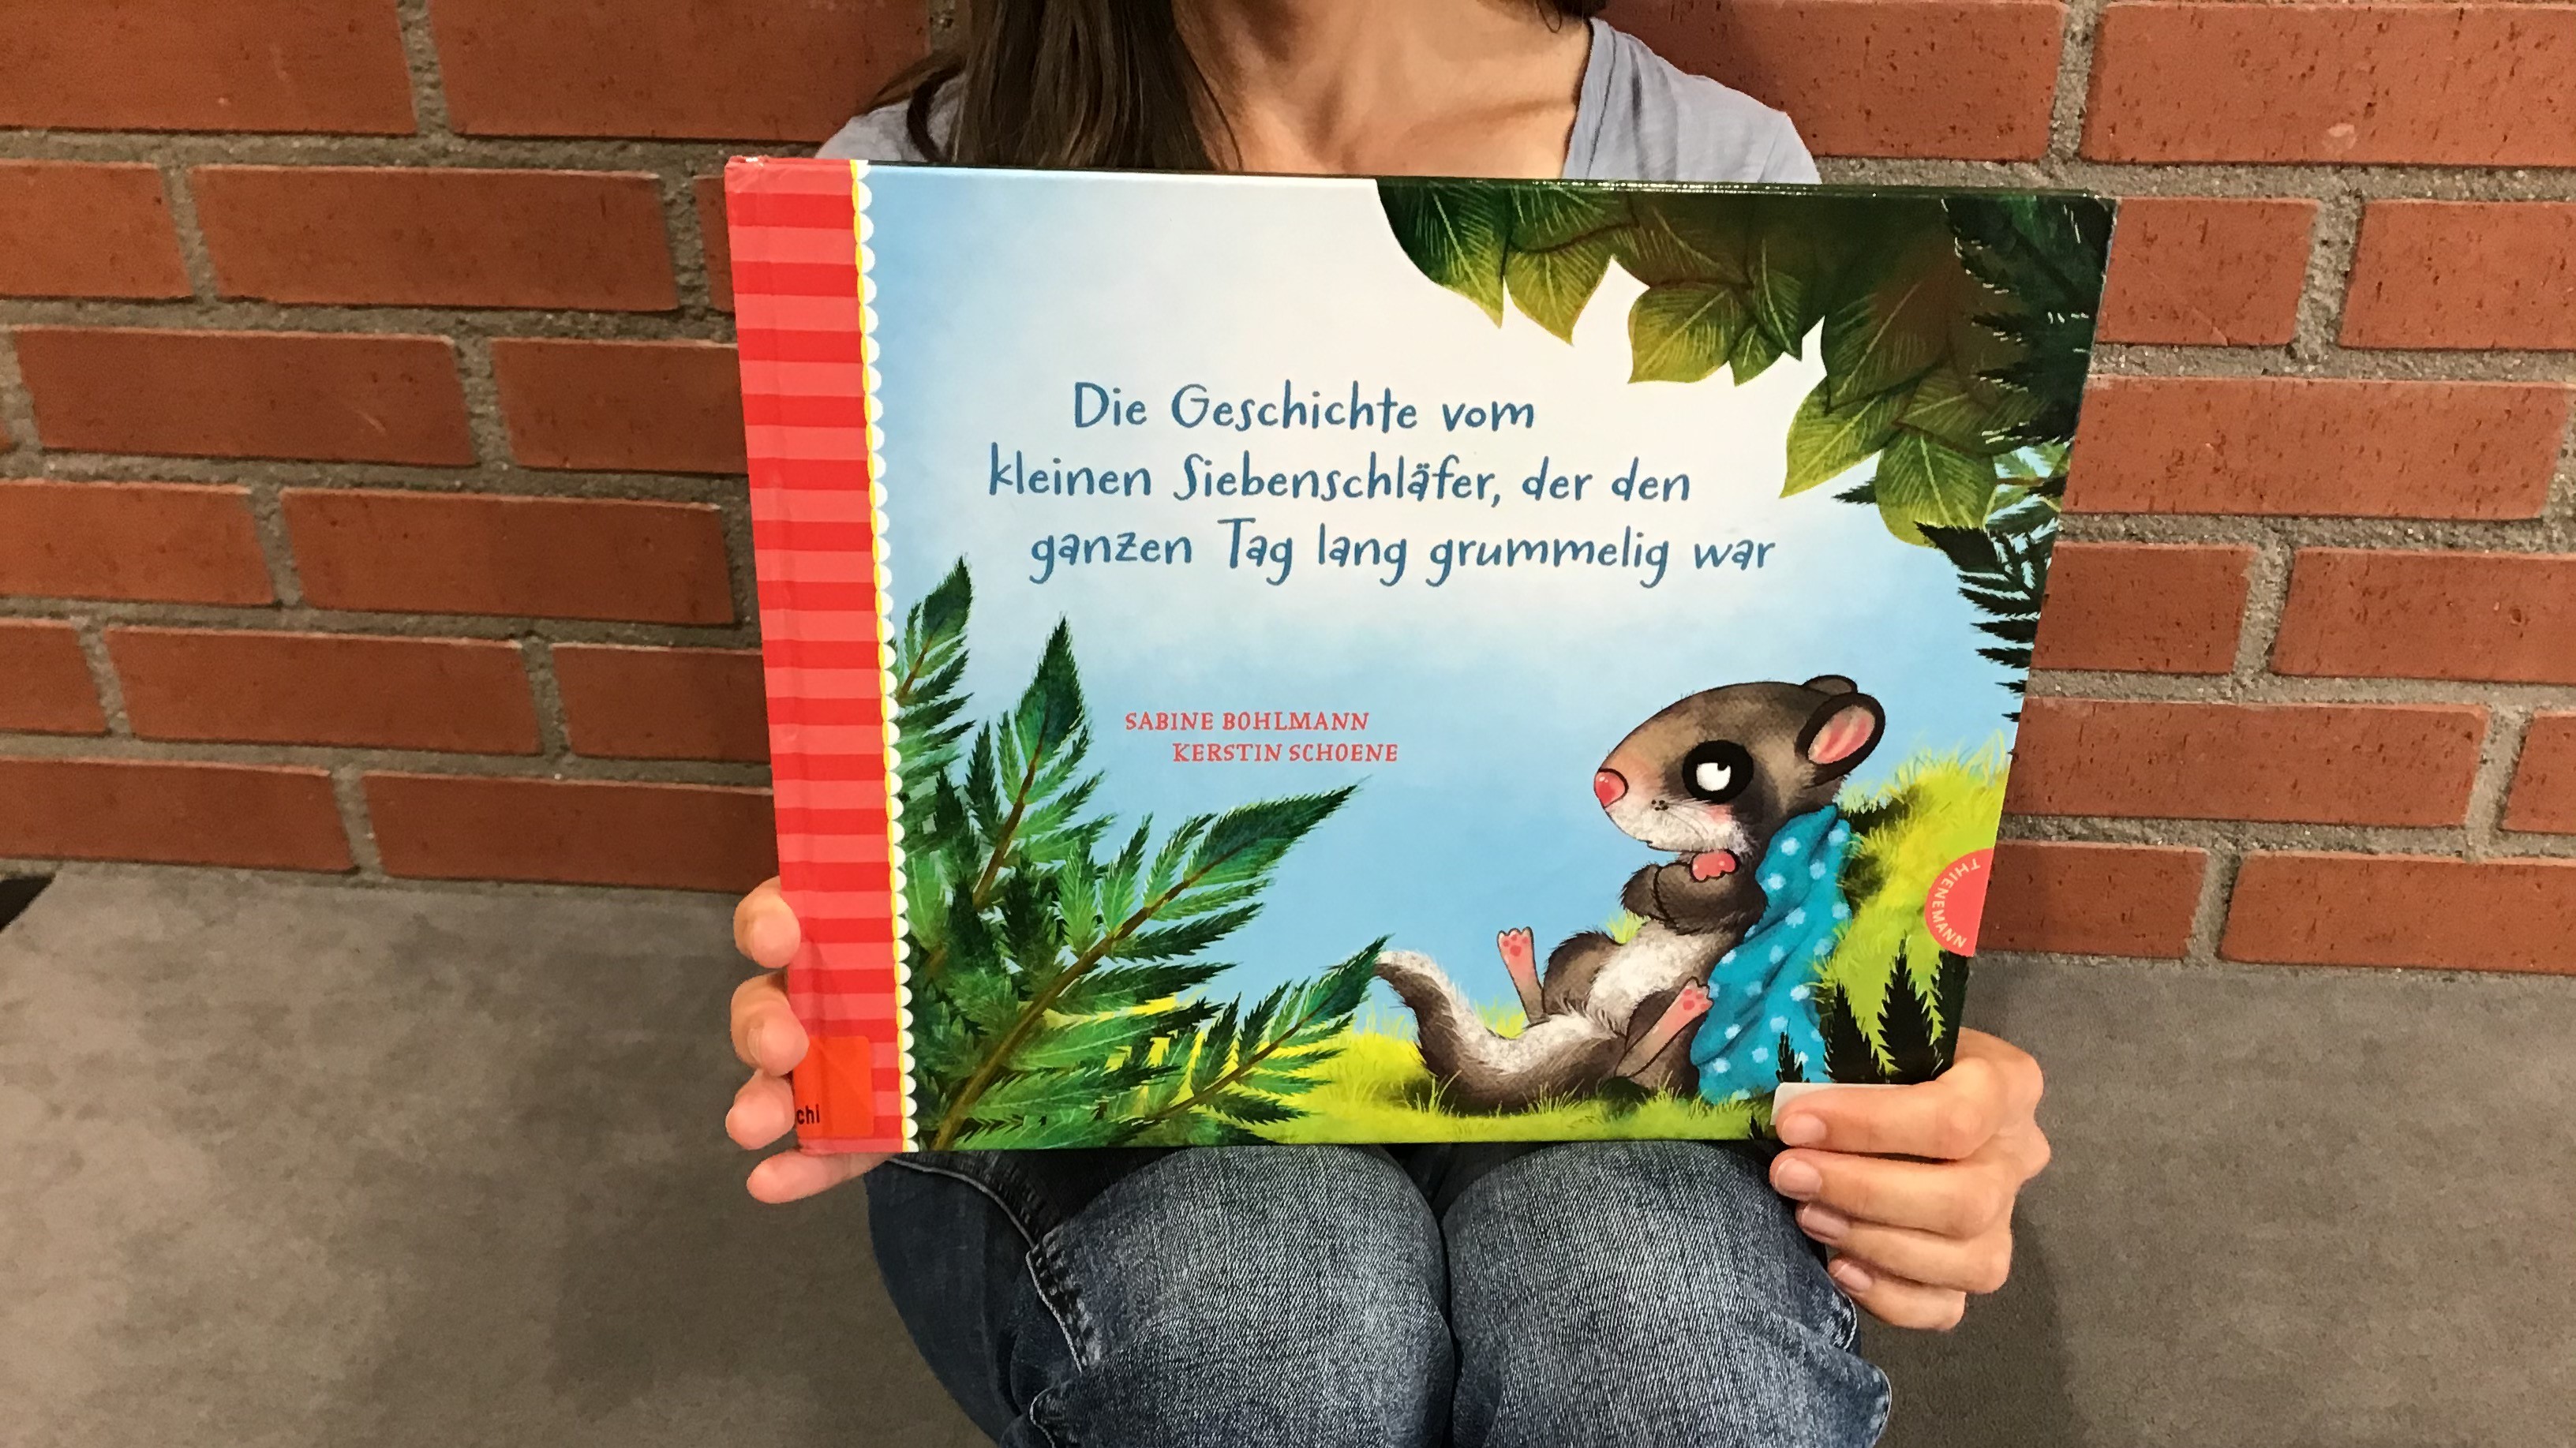 Buchcover "Die Geschichte vom kleinen Siebenschläfer, der den ganzen Tag lang grummelig war"  von Sabine Bohlmann und Kerstin Schoene 